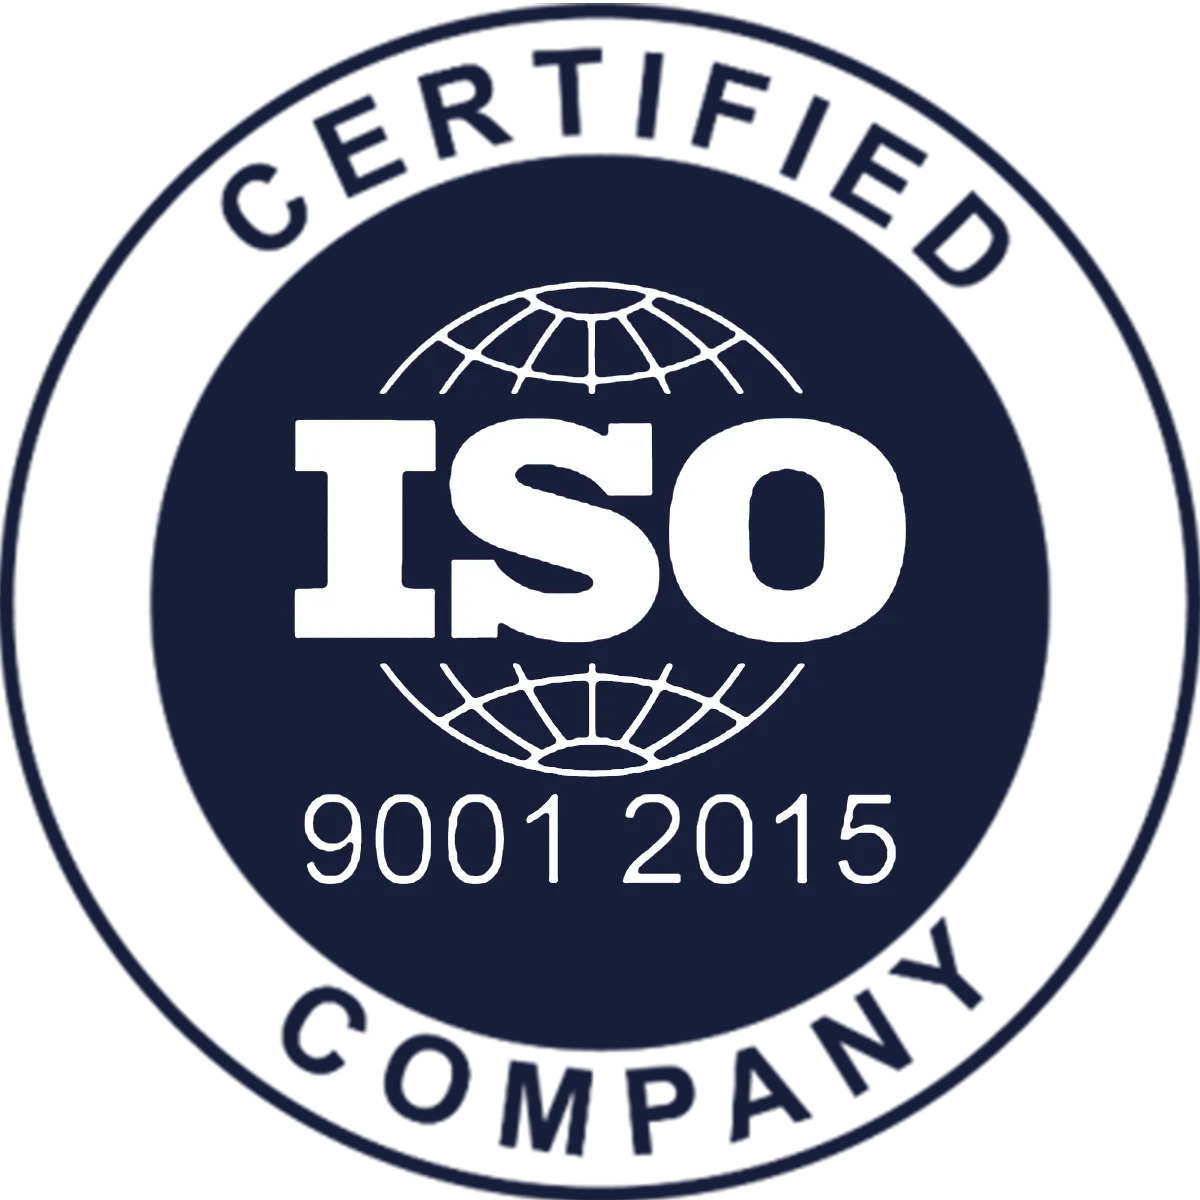 En DYA Manufacturas estamos certificados por ISO 9001:2015